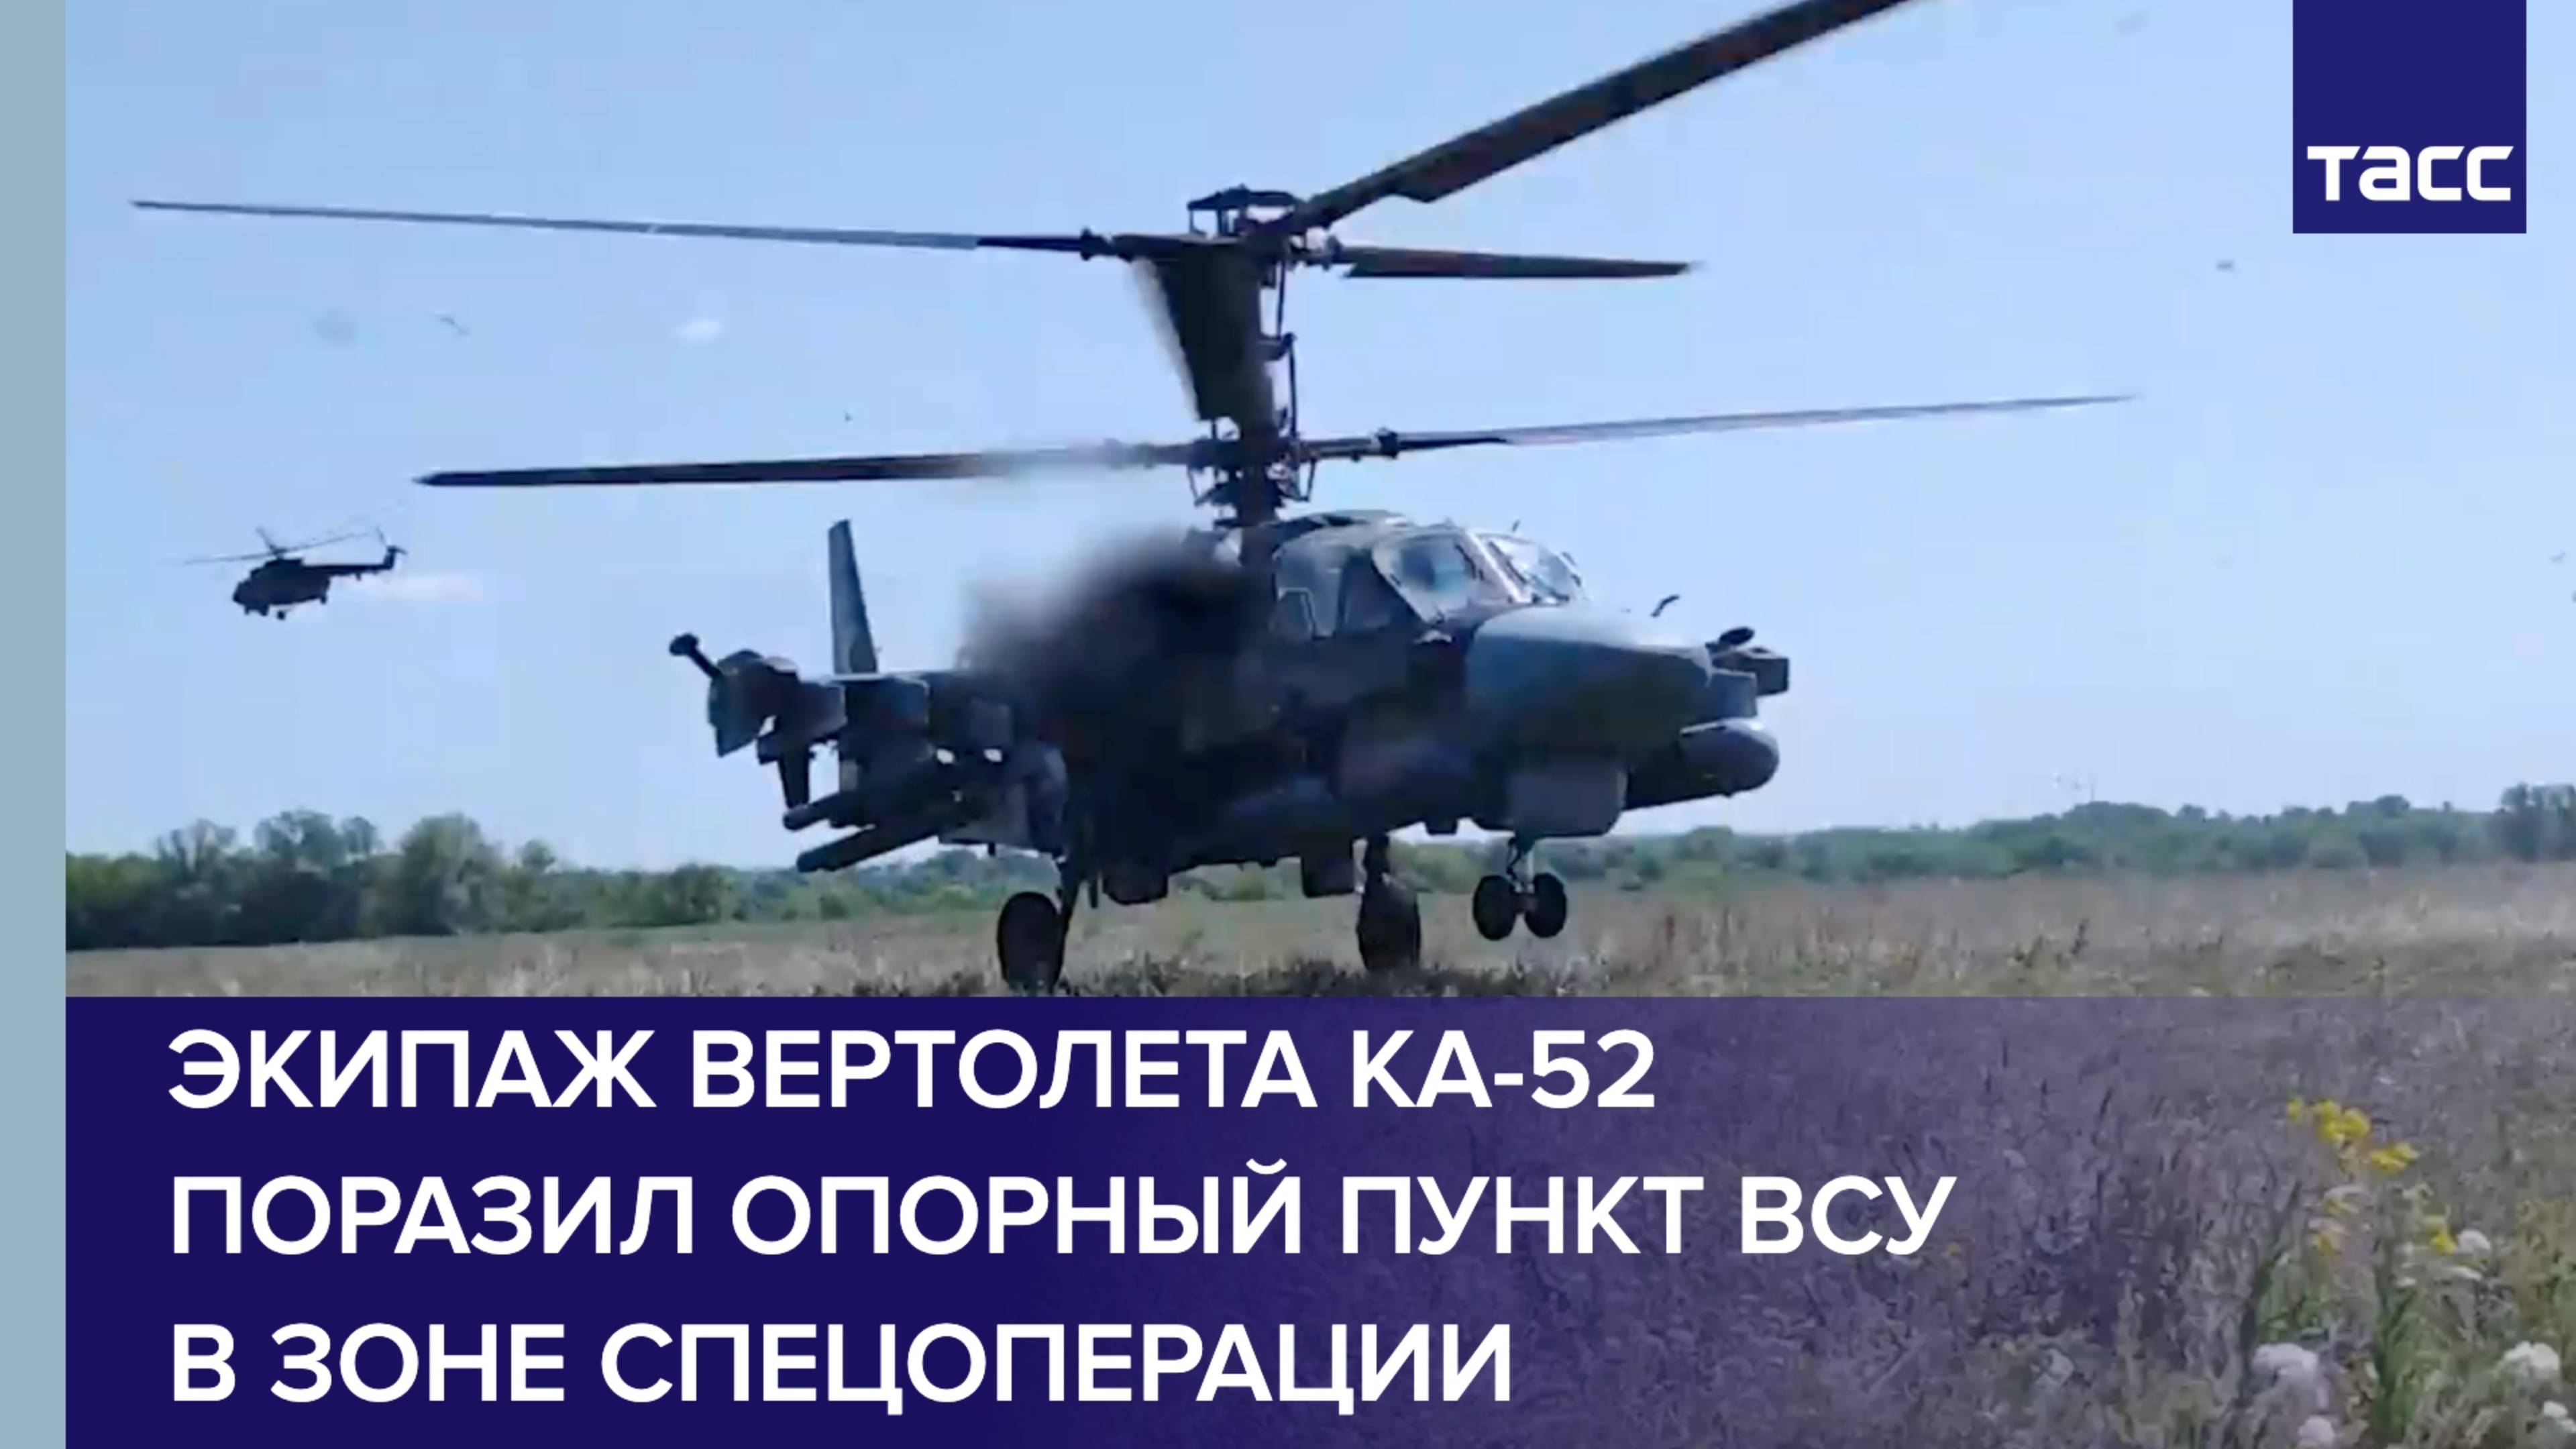 Экипаж вертолета Ка-52 поразил опорный пункт ВСУ в зоне спецоперации